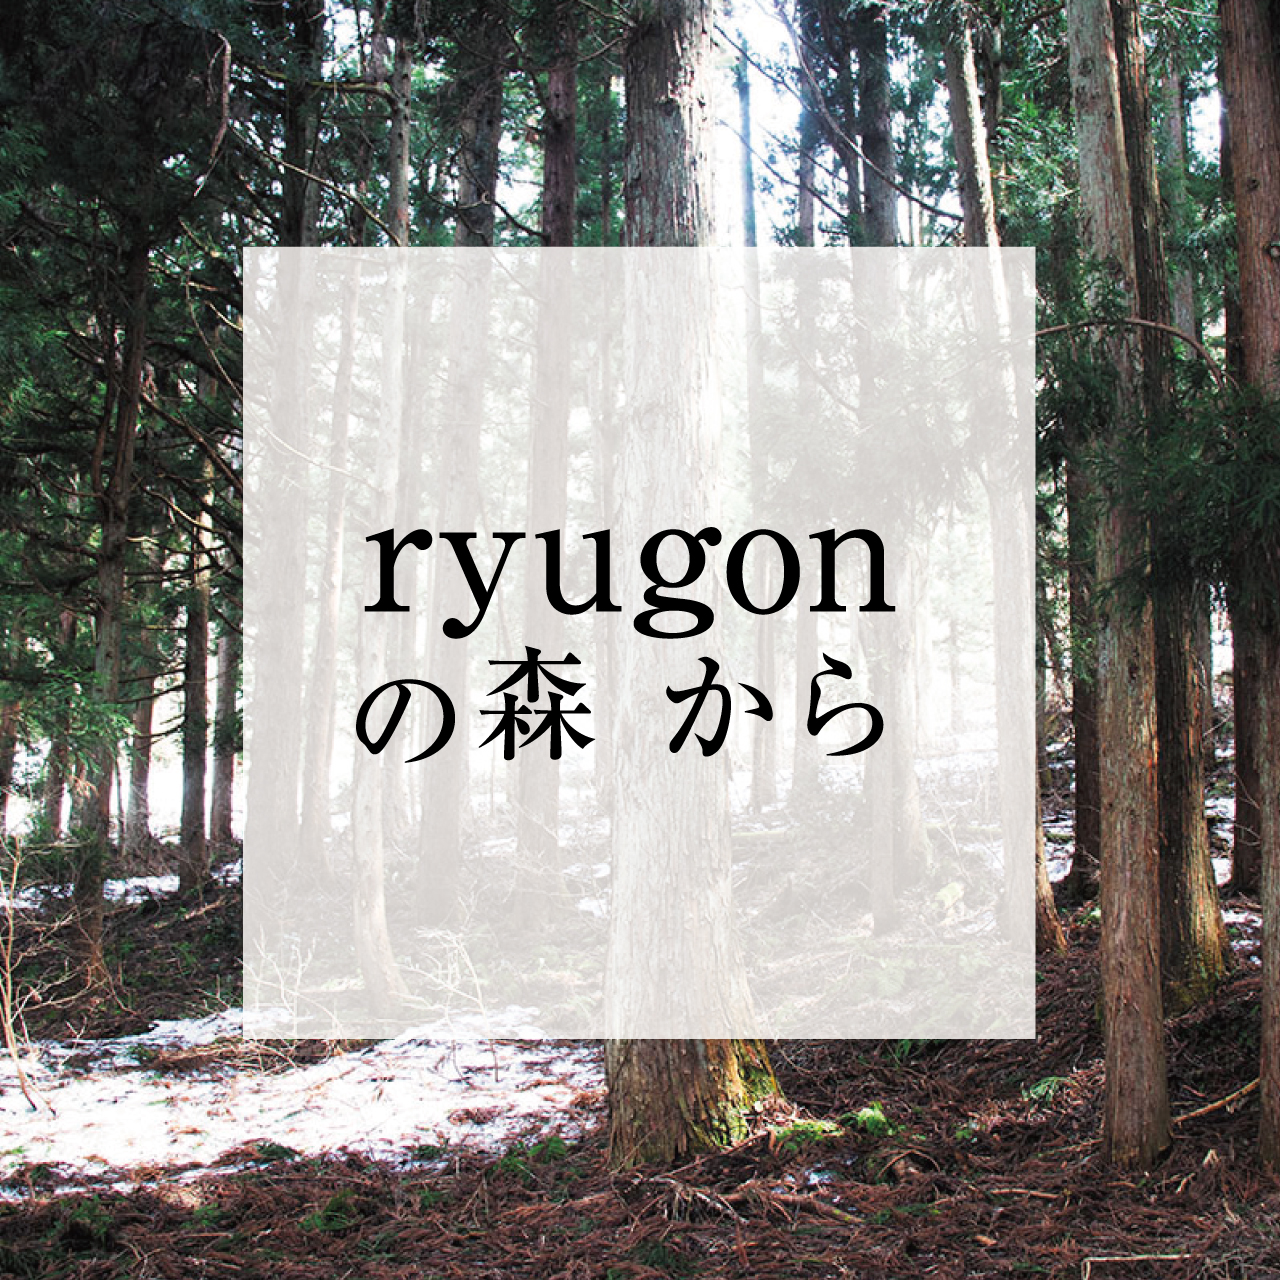 人と里山をつなぐ、 ryugonの森